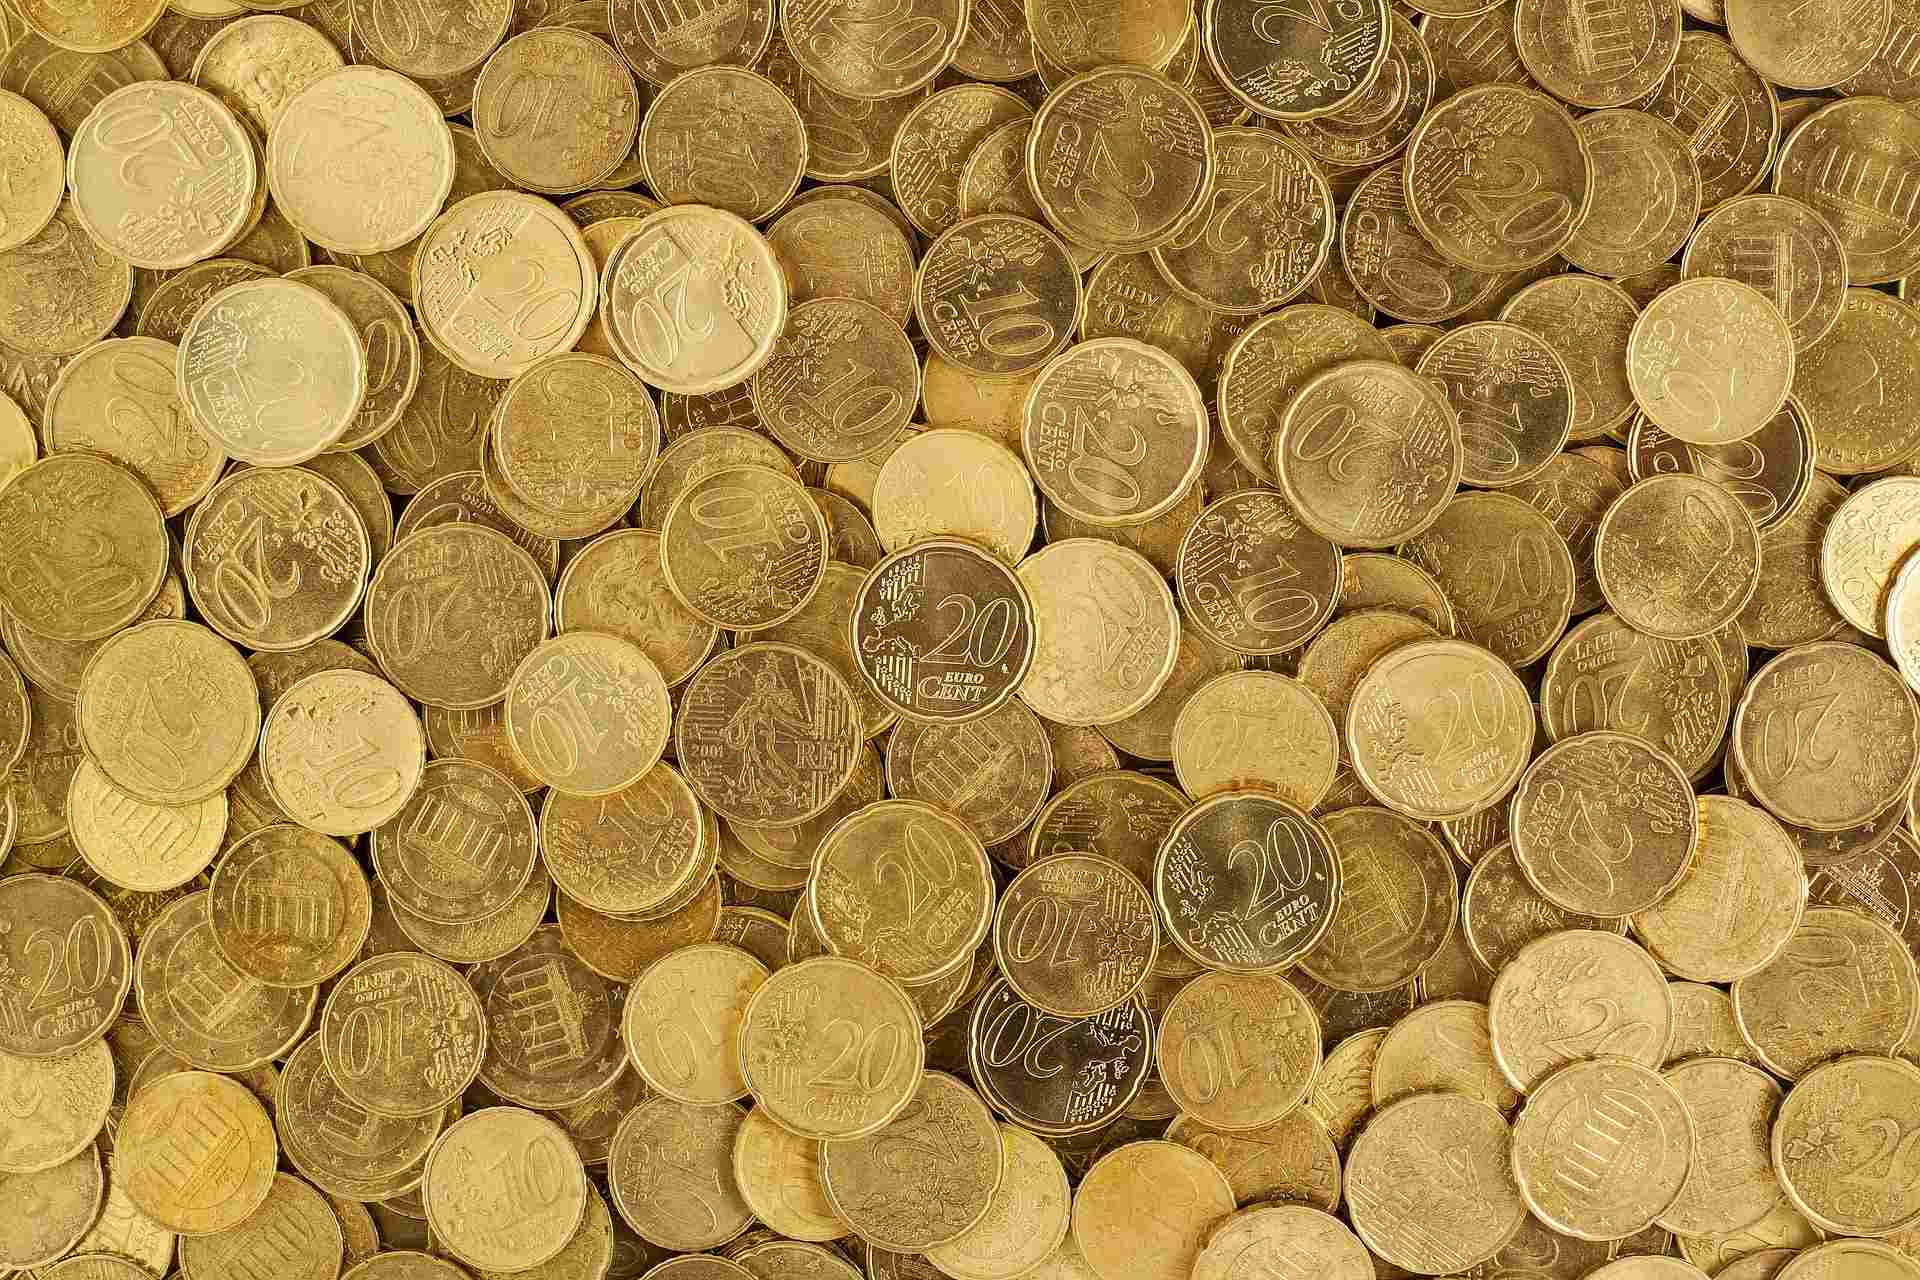 Blick auf einen Haufen 10 Cent und 20 Cent Münzen